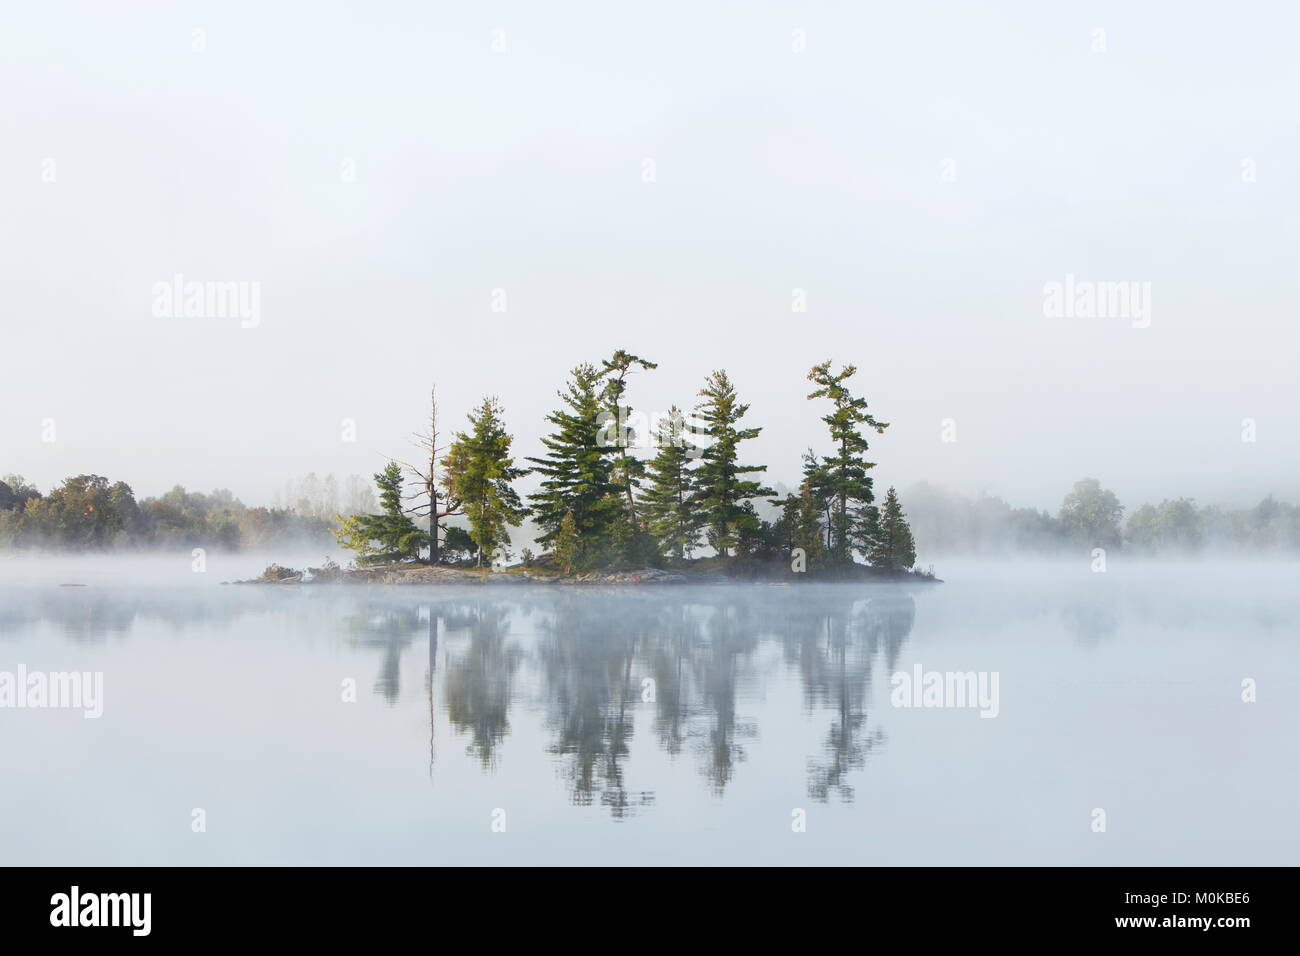 Le brouillard entoure une petite île sur le lac de tortues dans la région de Muskoka (Ontario), près de Rosseau ; Ontario, Canada Banque D'Images